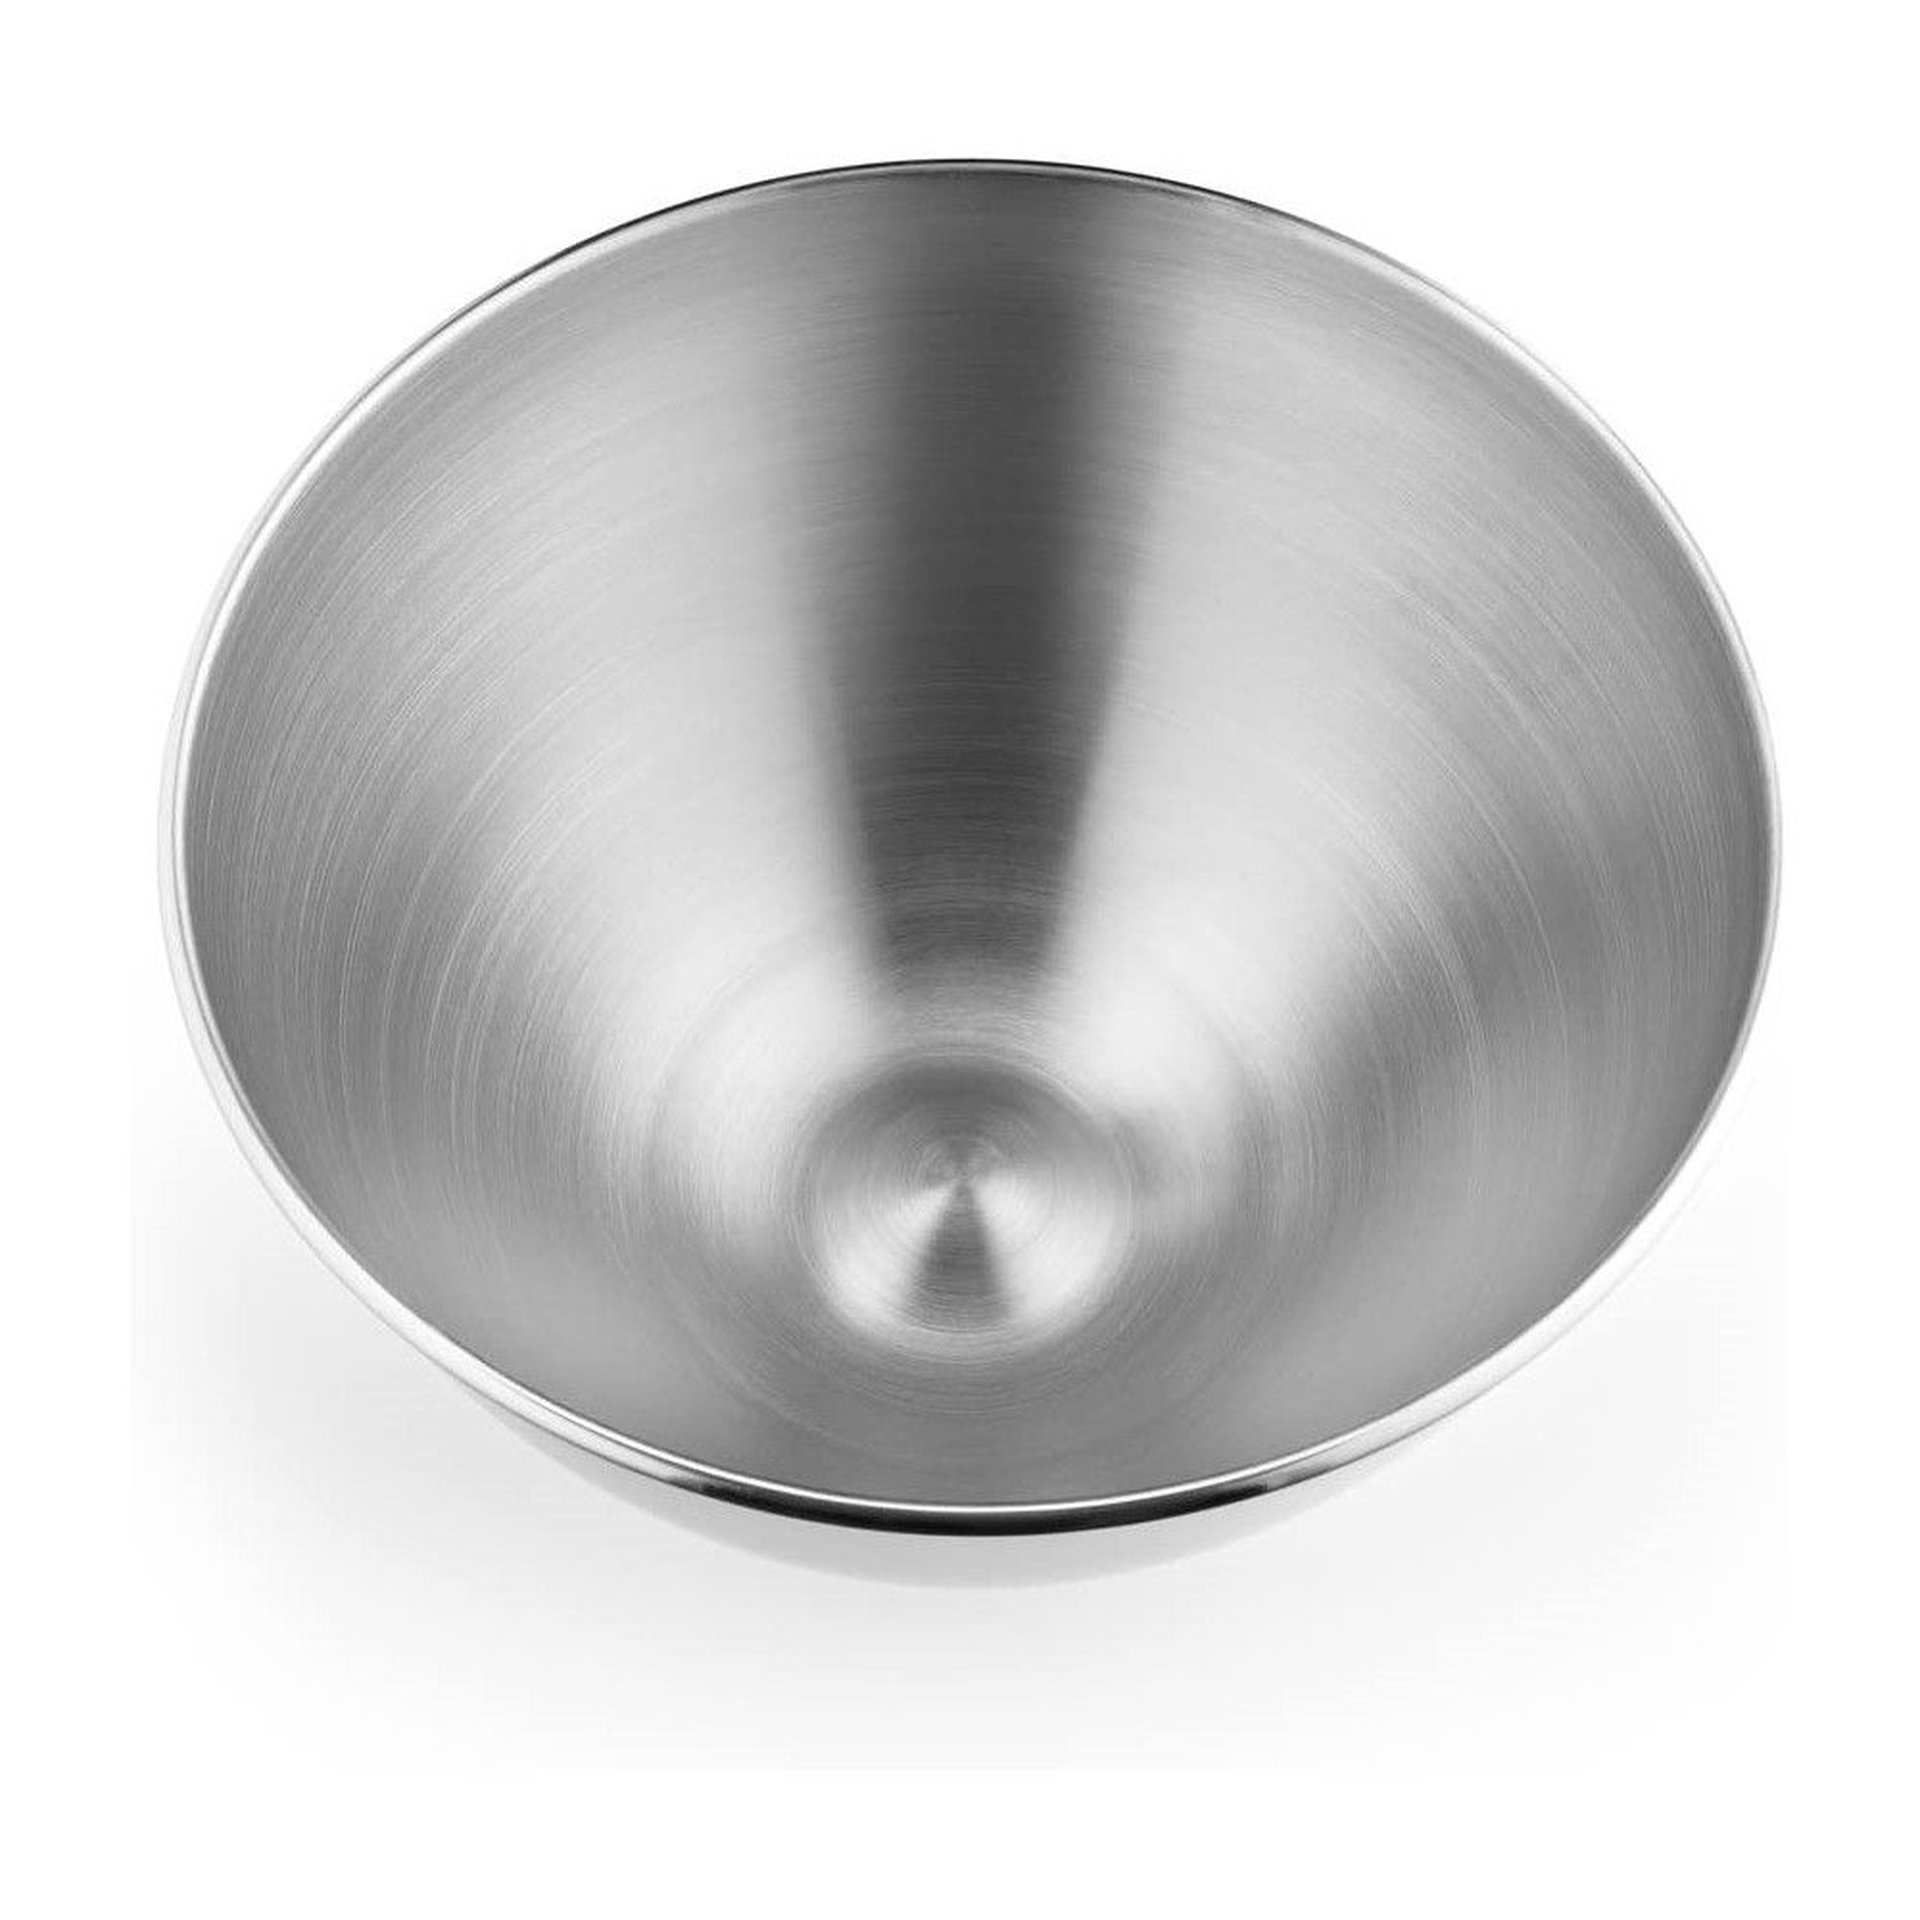 5 Quart Tilt-Head Metallic Finish Stainless Steel Bowl